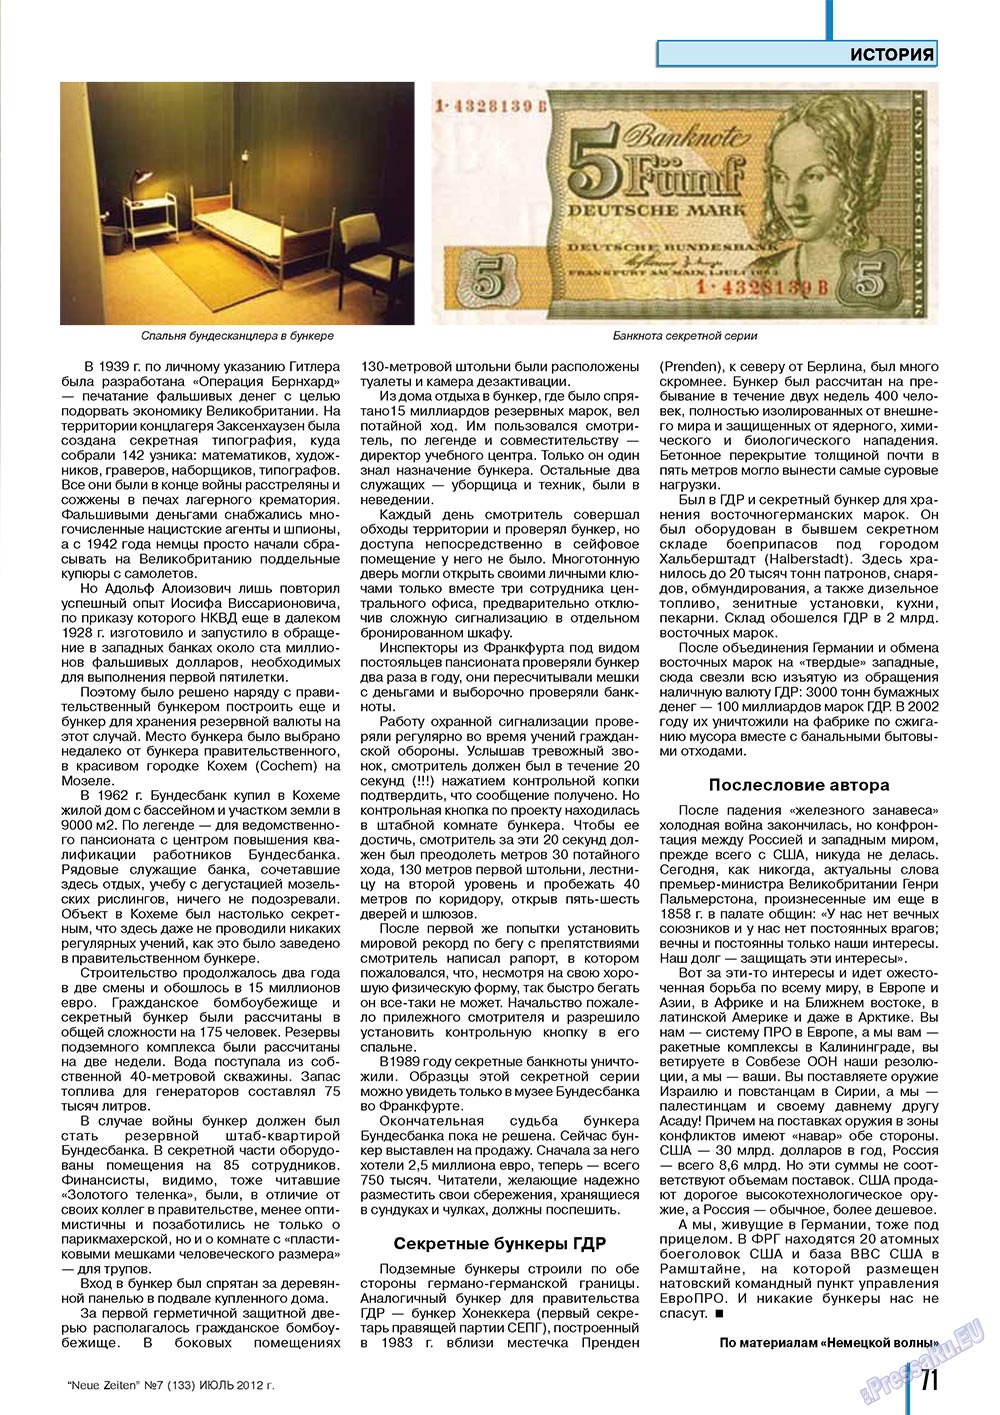 Neue Zeiten, журнал. 2012 №7 стр.71